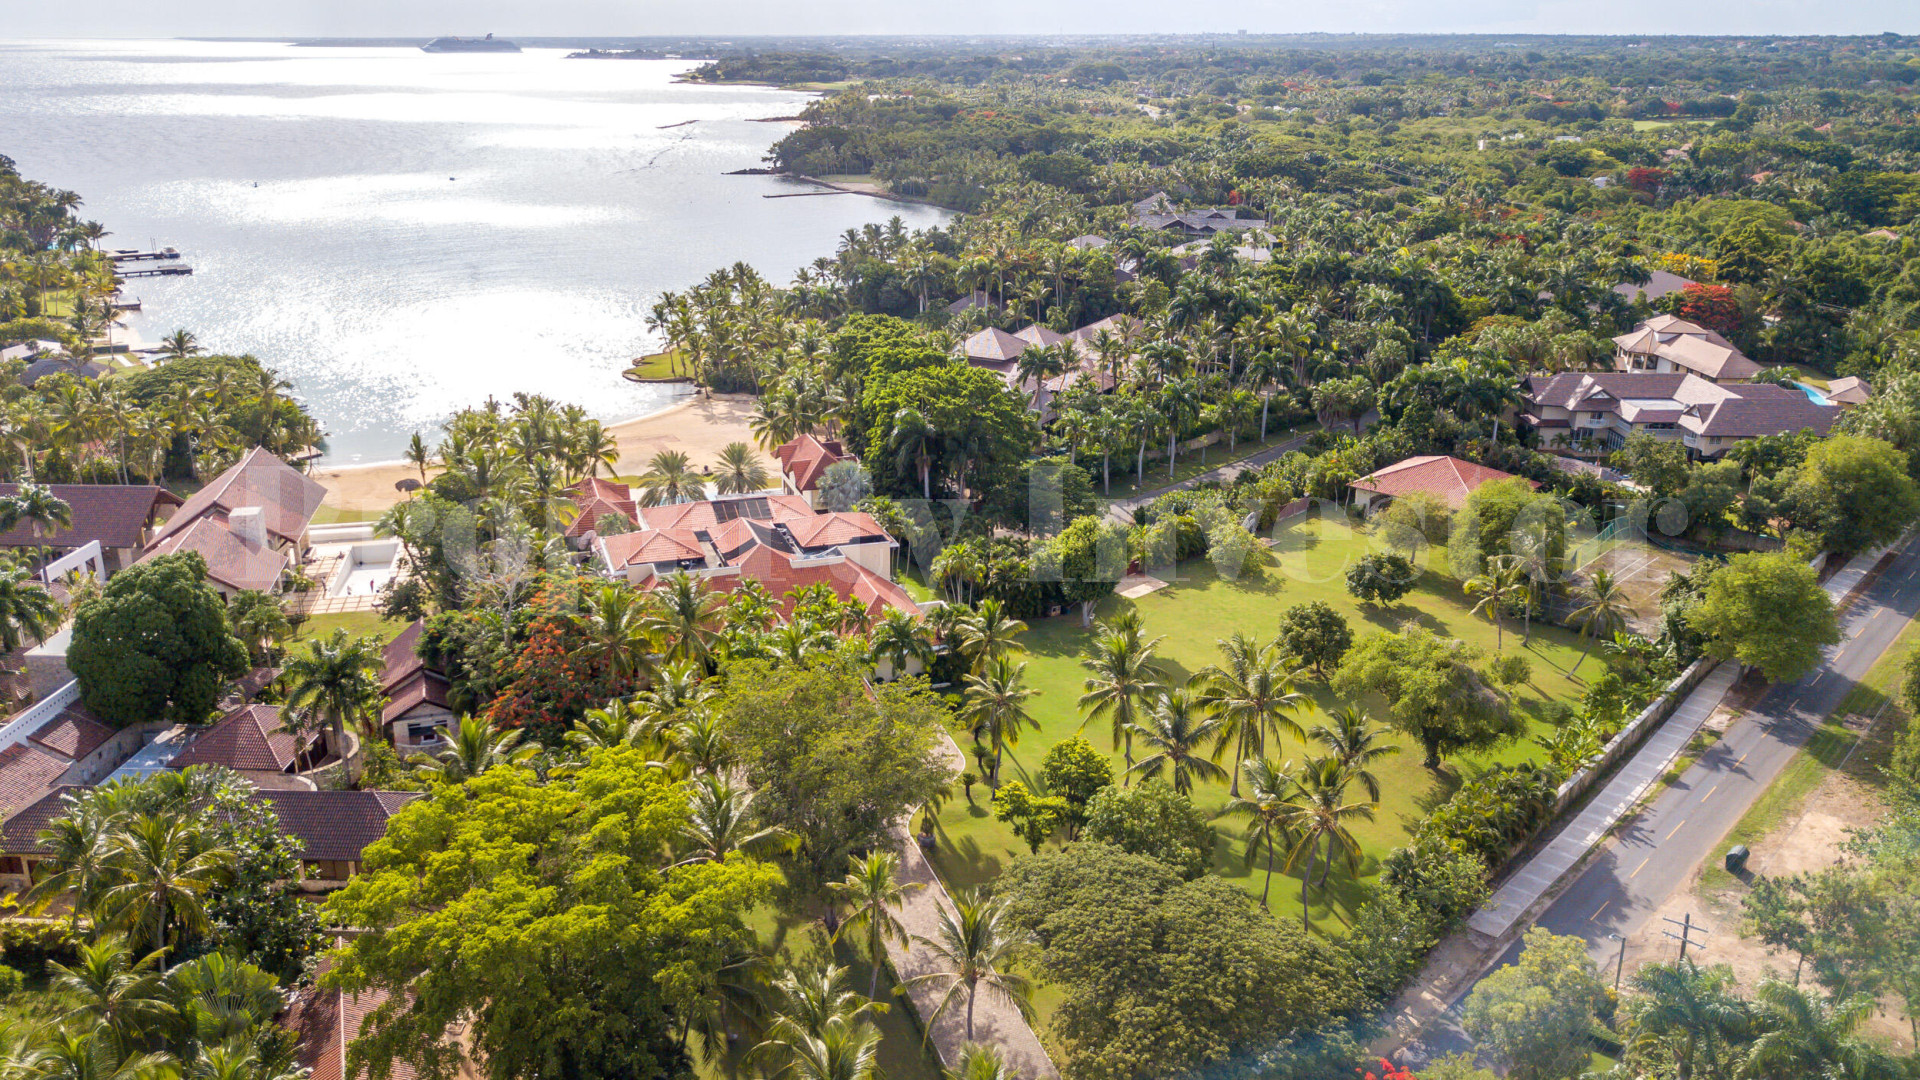 Incredible 7 Bedroom Beachfront Luxury Villa with Immense 13,240 m² Lot for Sale in Casa de Campo, the Dominican Republic